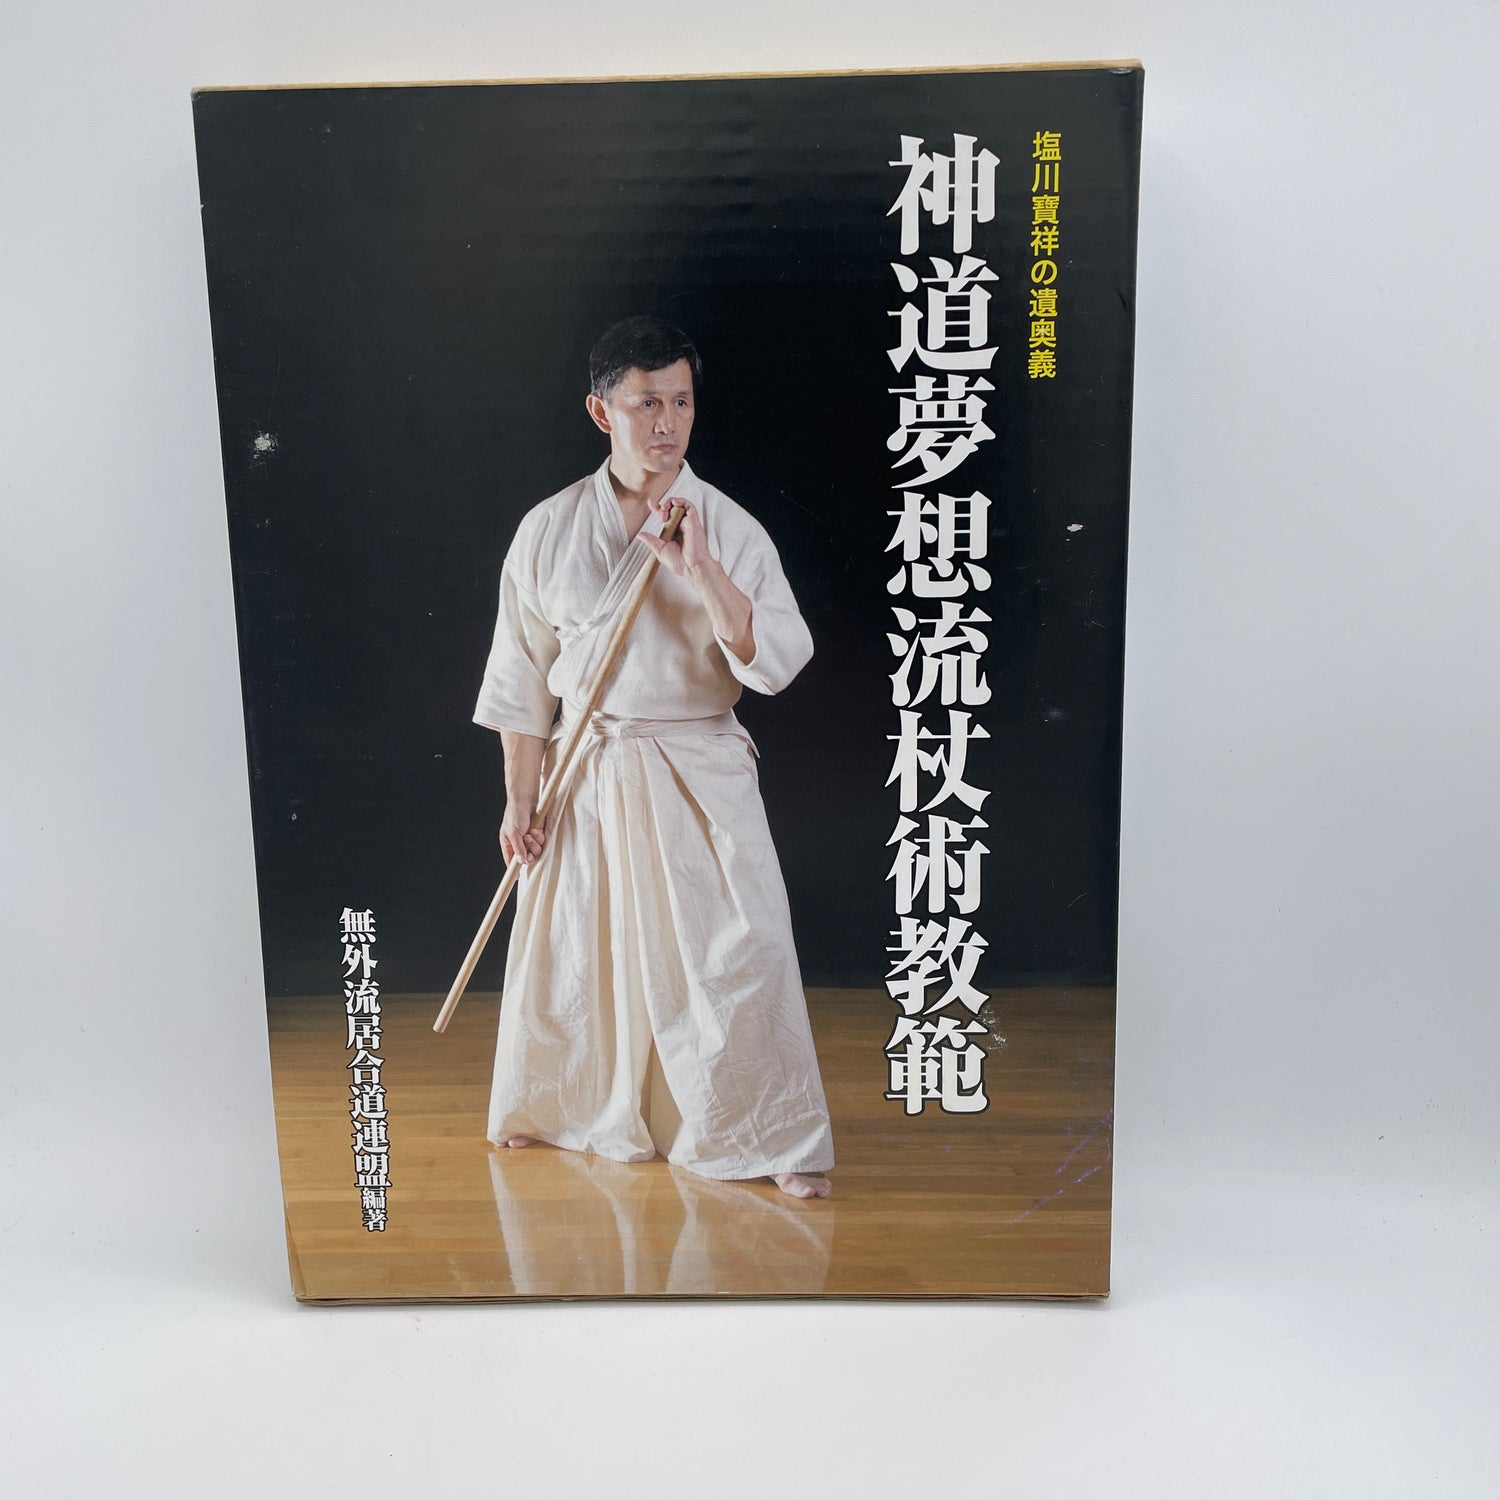 Shinto Muso Ryu Jojutsu Kyohan Book by Hosho Shiokawa (Hardcover)